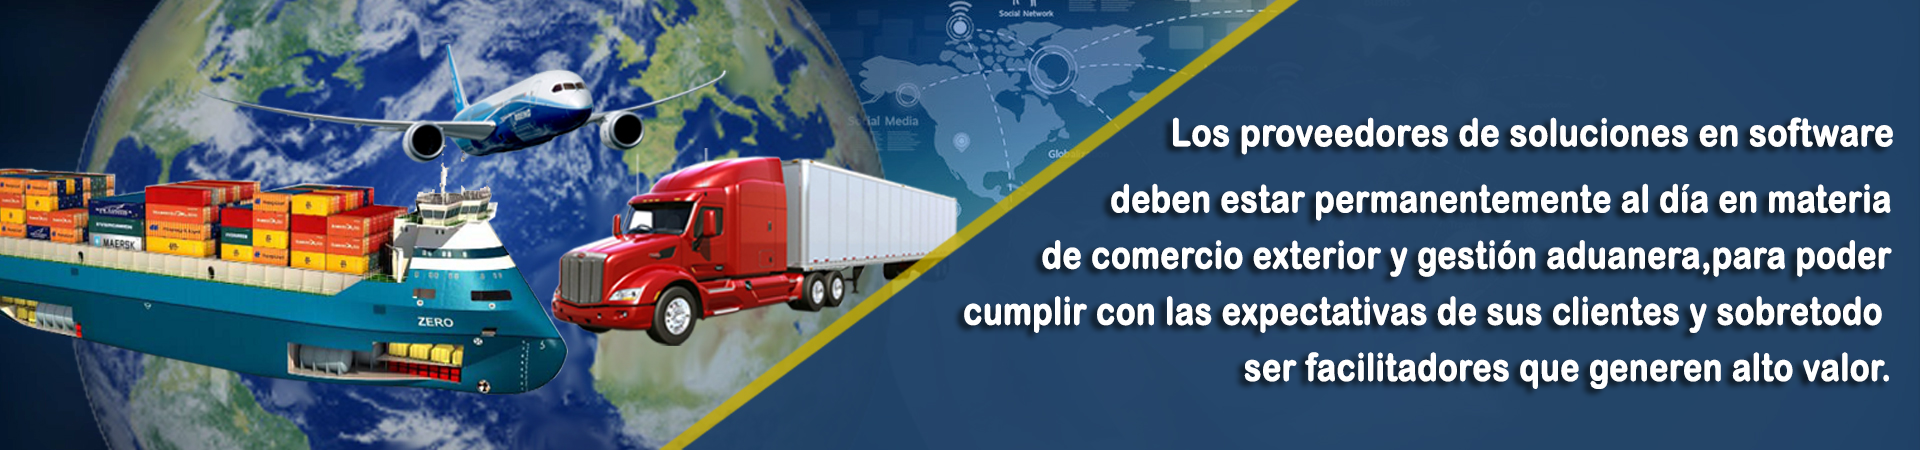 tecnología comercio exterior comex 360 aduana importaciones exportaciones ecuador